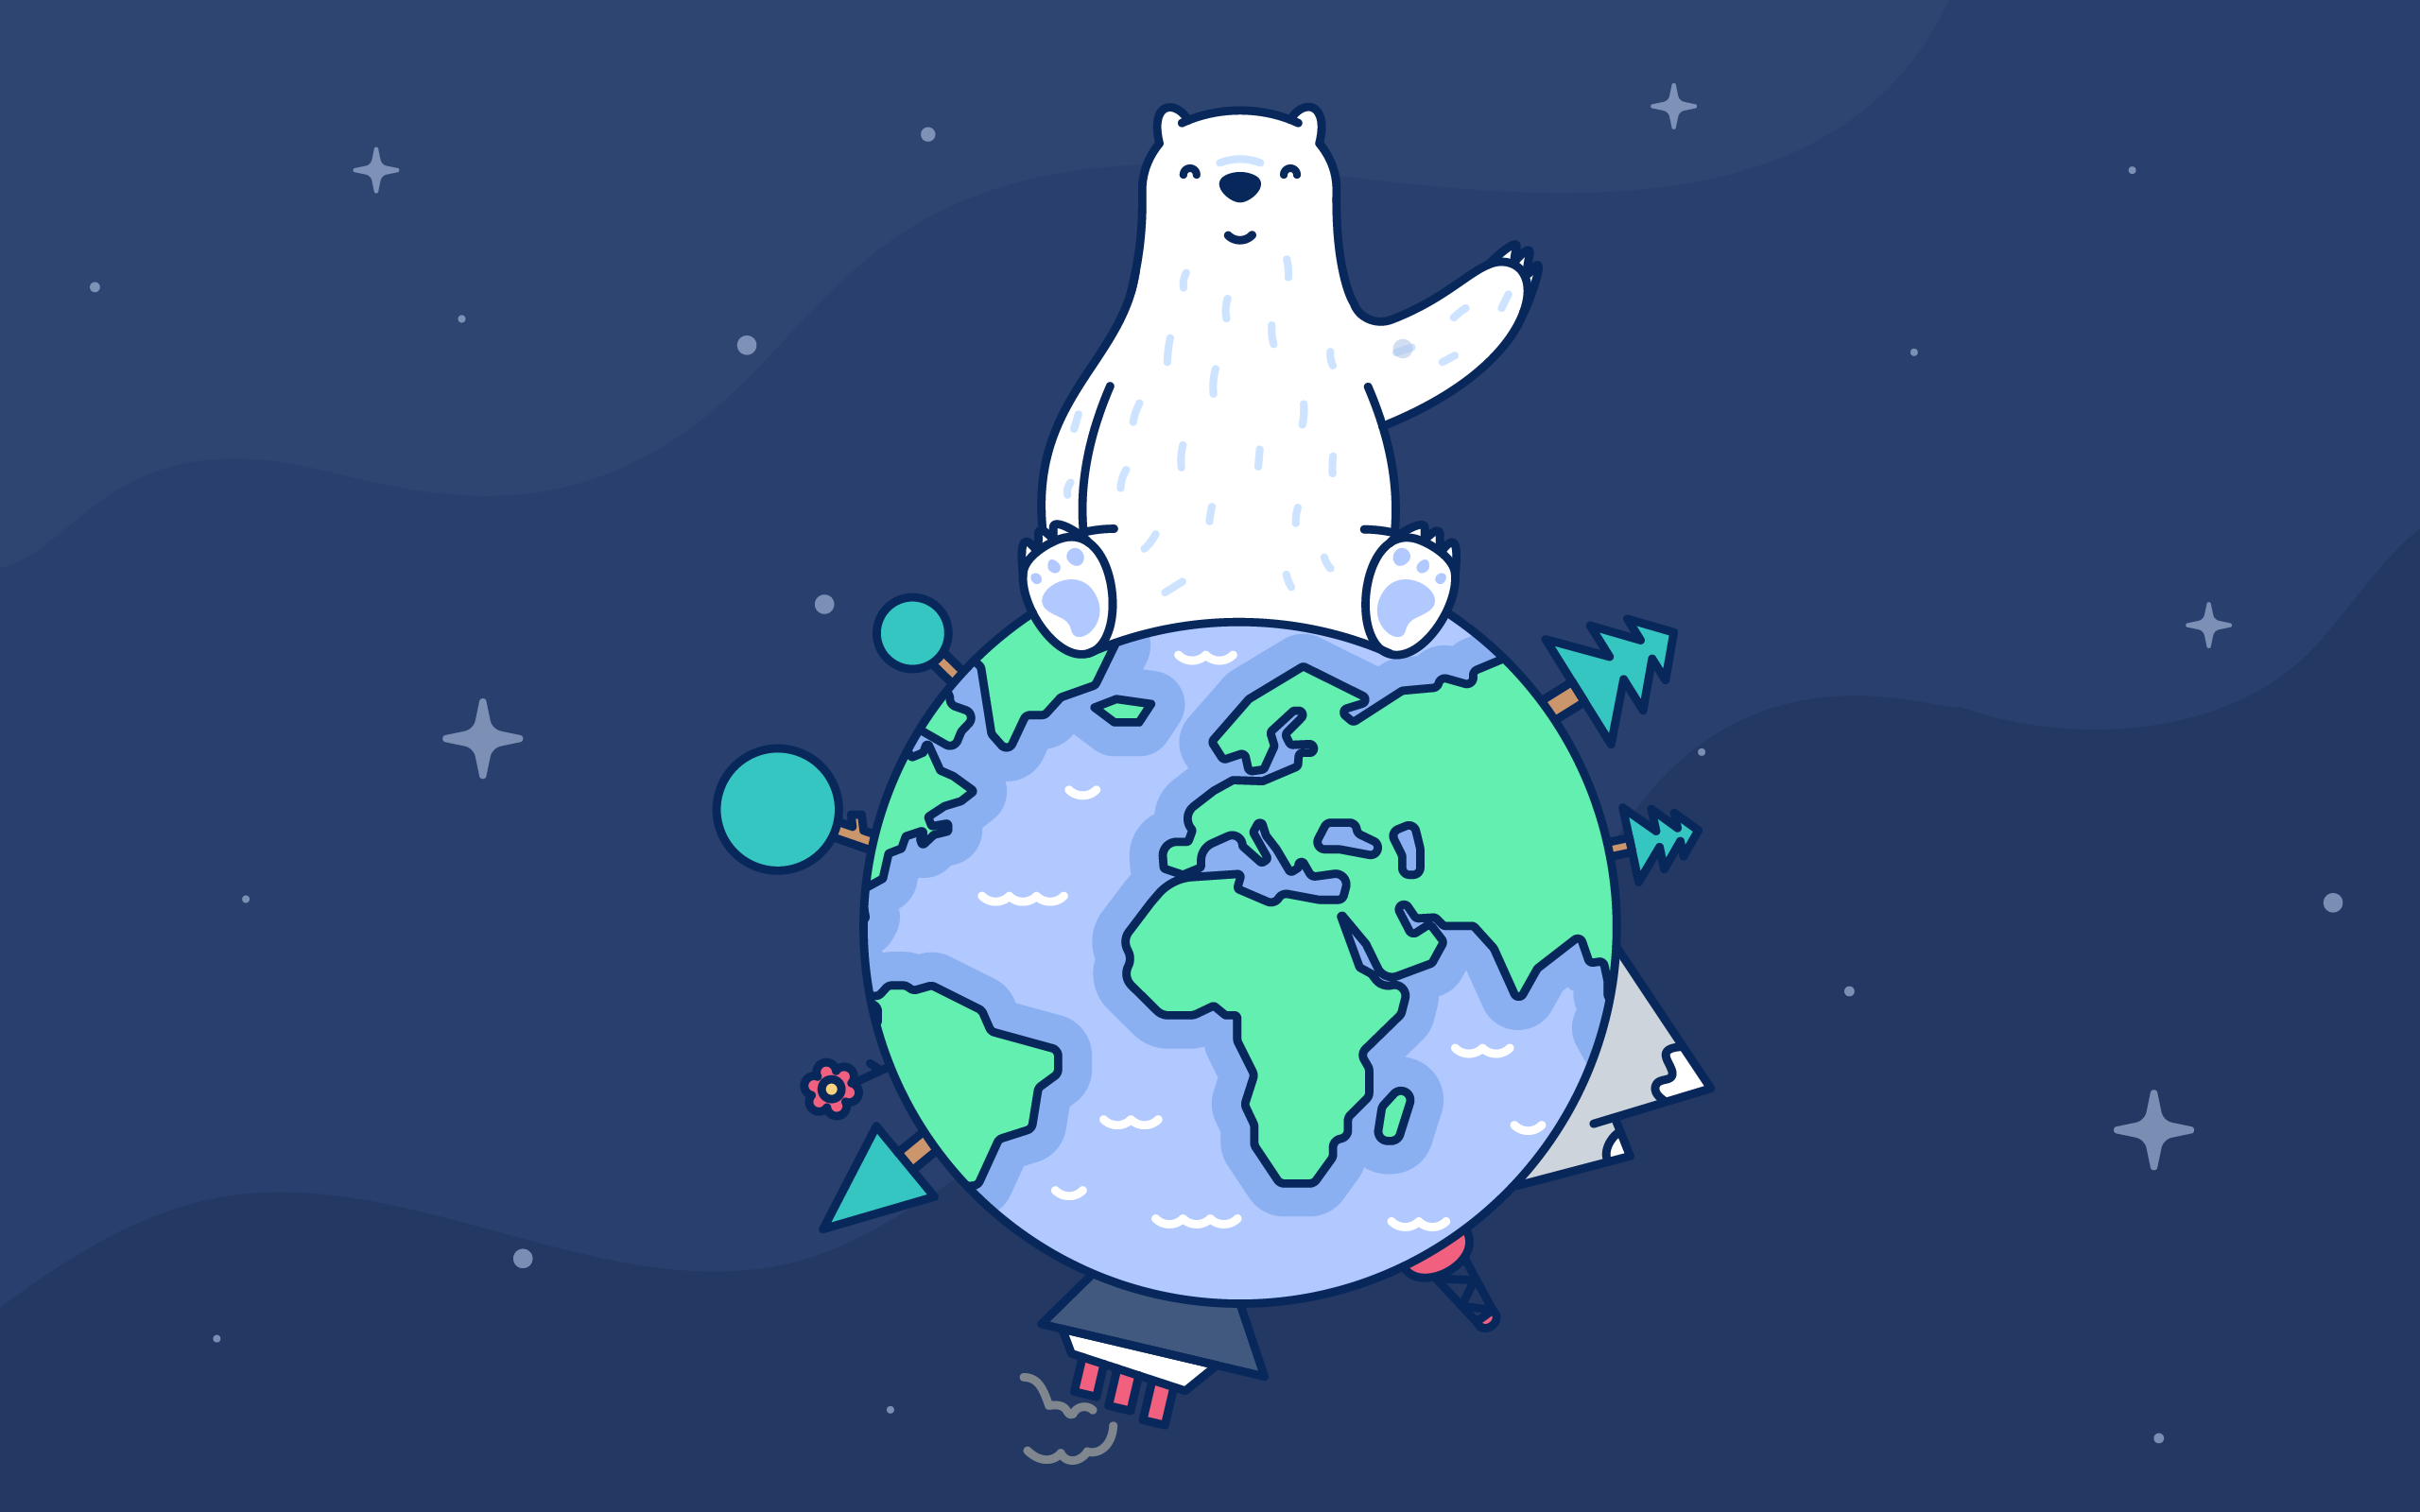 دانلود عکس خرس کارتونی کیوت روی کره زمین برای پروفایل